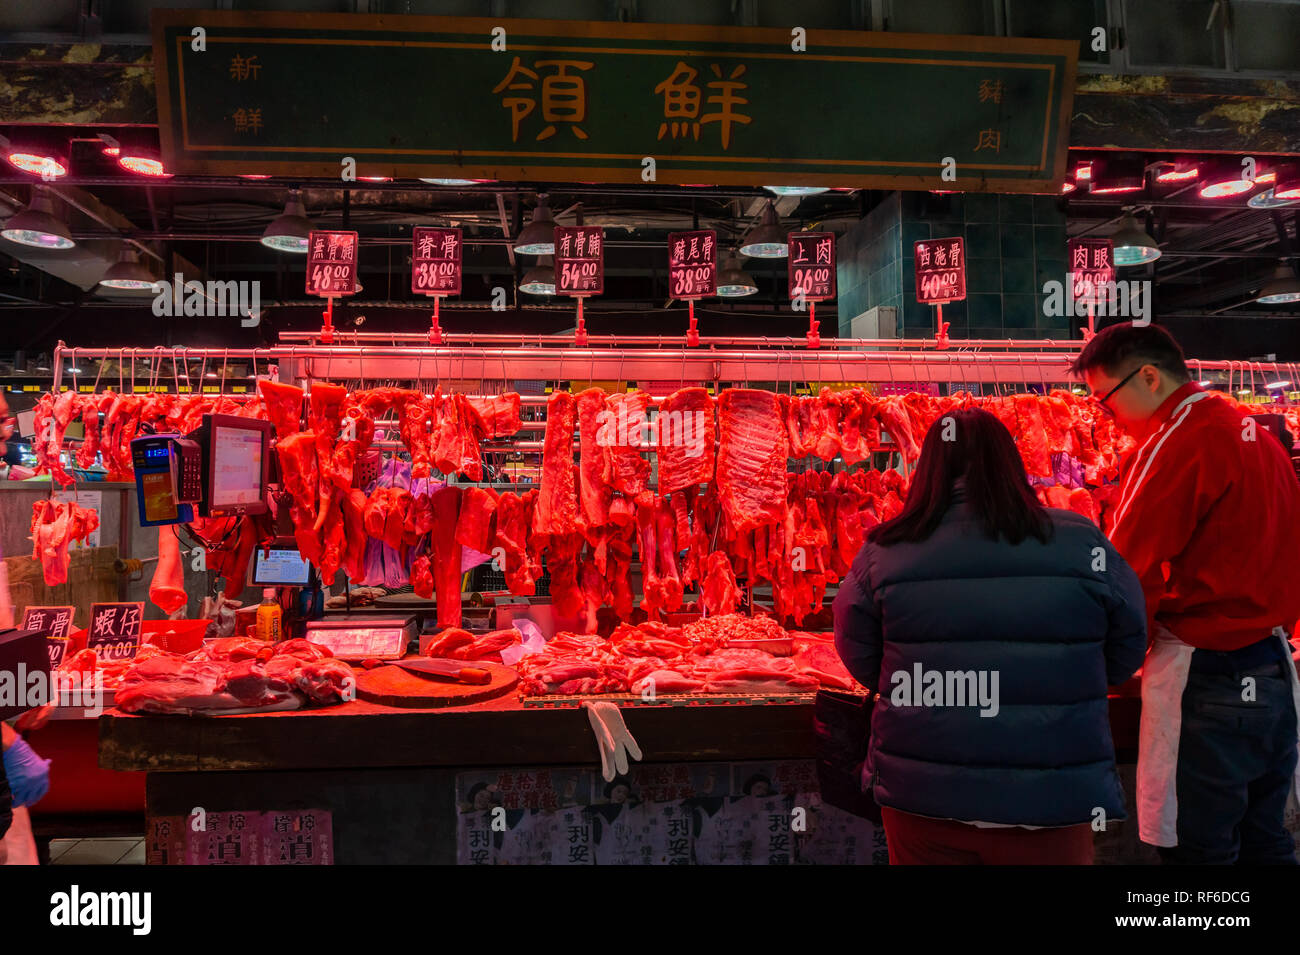 Hong Kong, DEC 31: Many porks, meat selling in the Hong Kong Market - Yat Tung on DEC 31, 2018 at Hong Kong Stock Photo